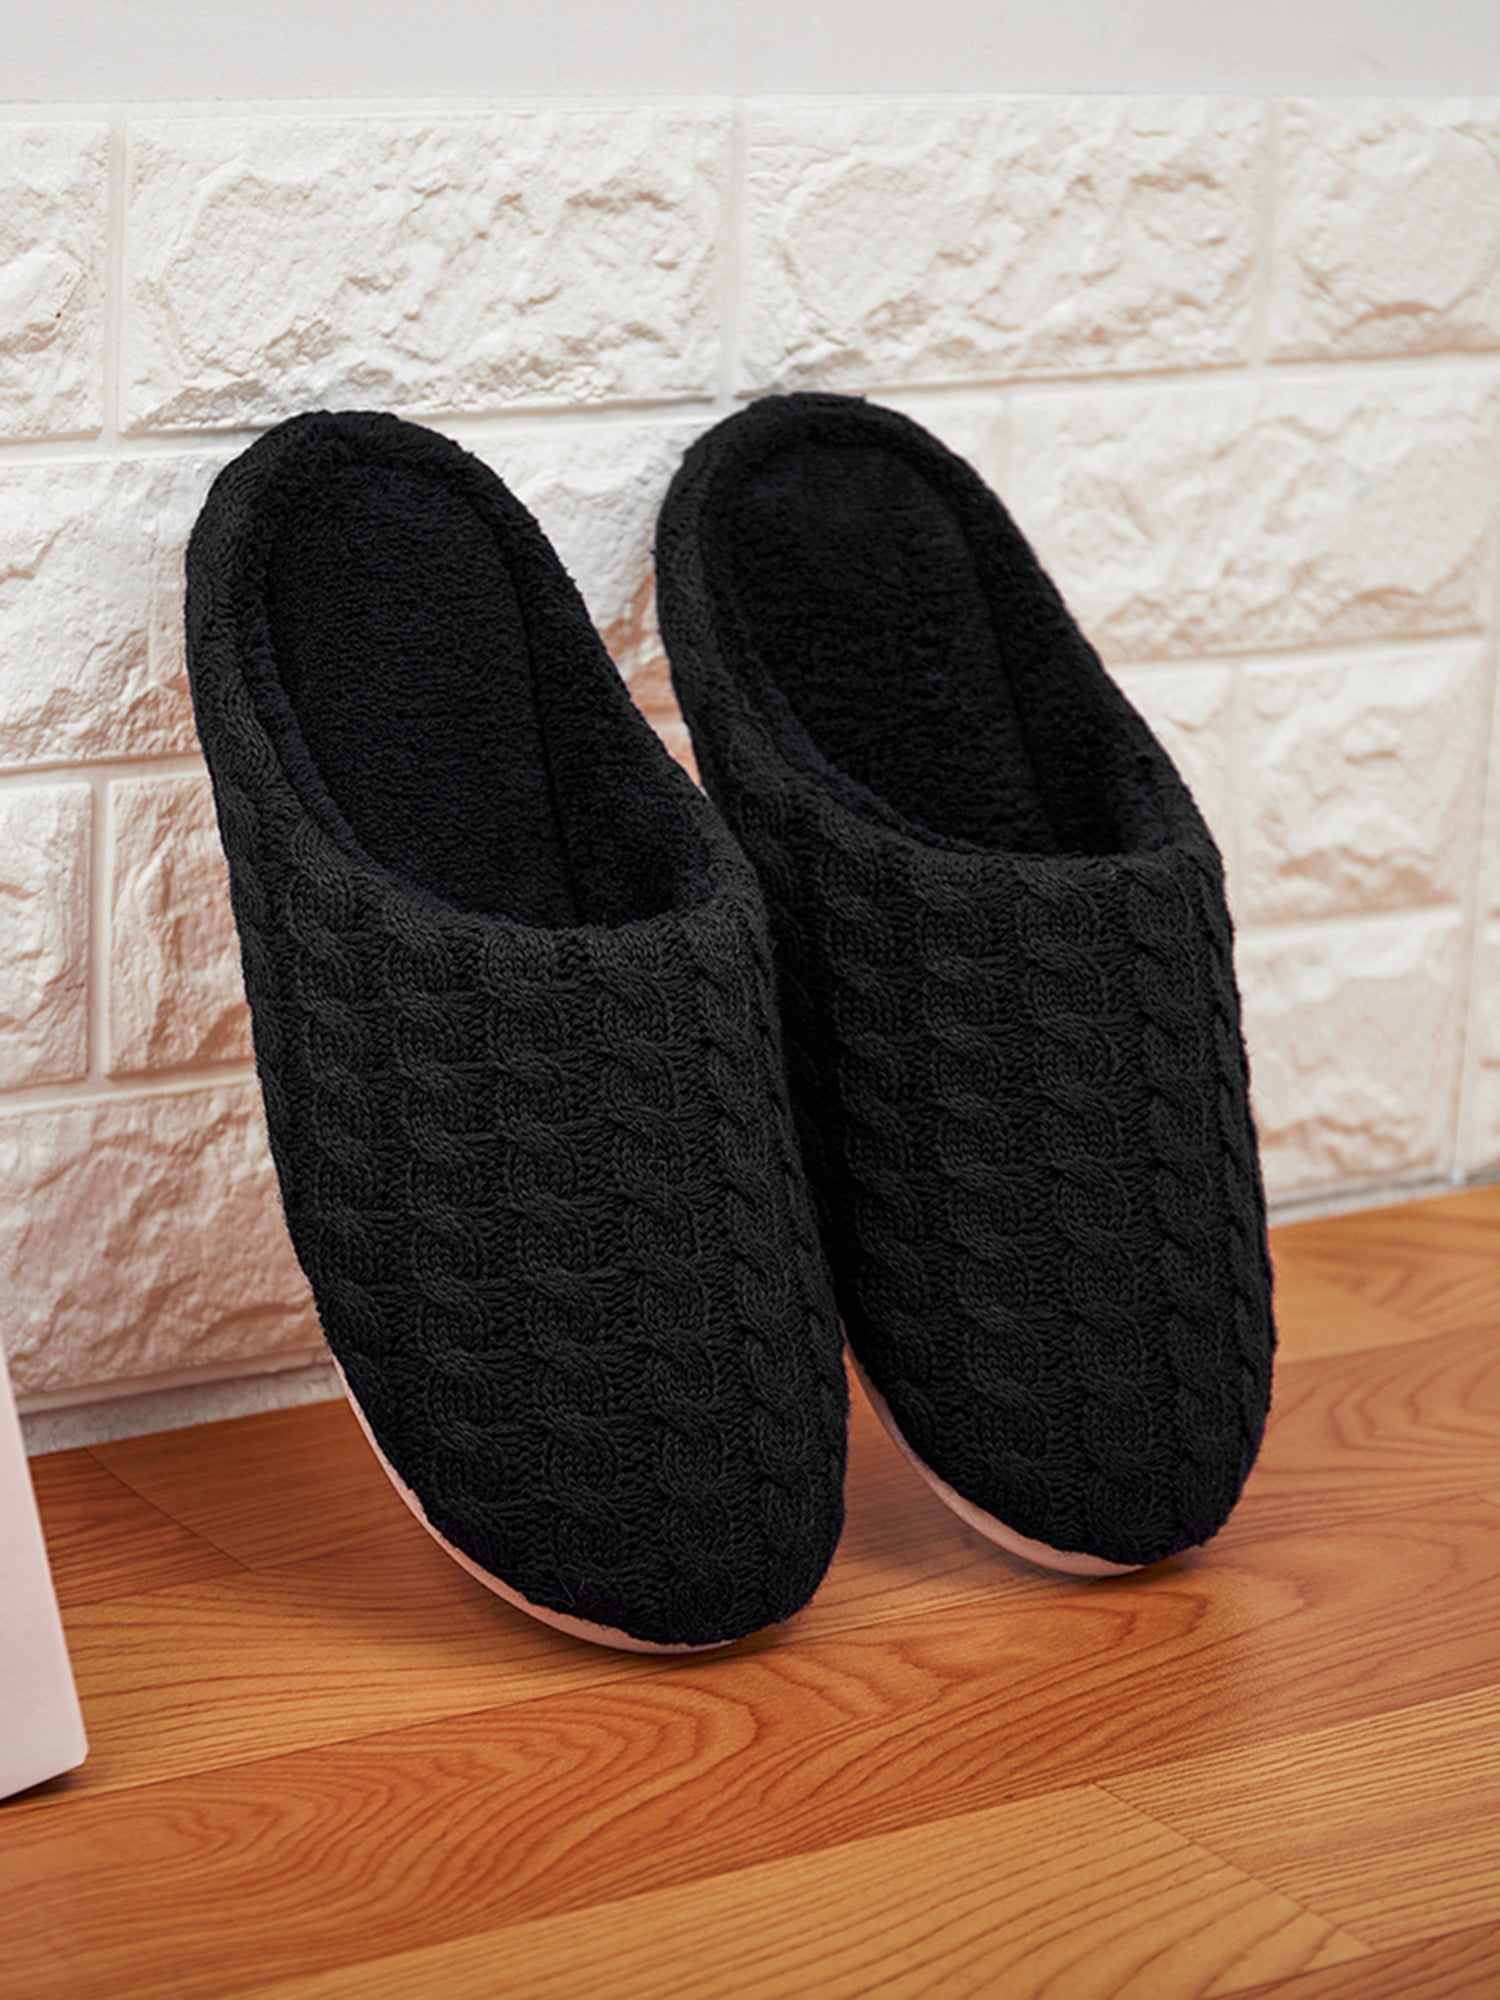 Men&Women Plush Fleece Memory Foam Slippers Slip On House Shoes Indoor  Outdoor - Walmart.com